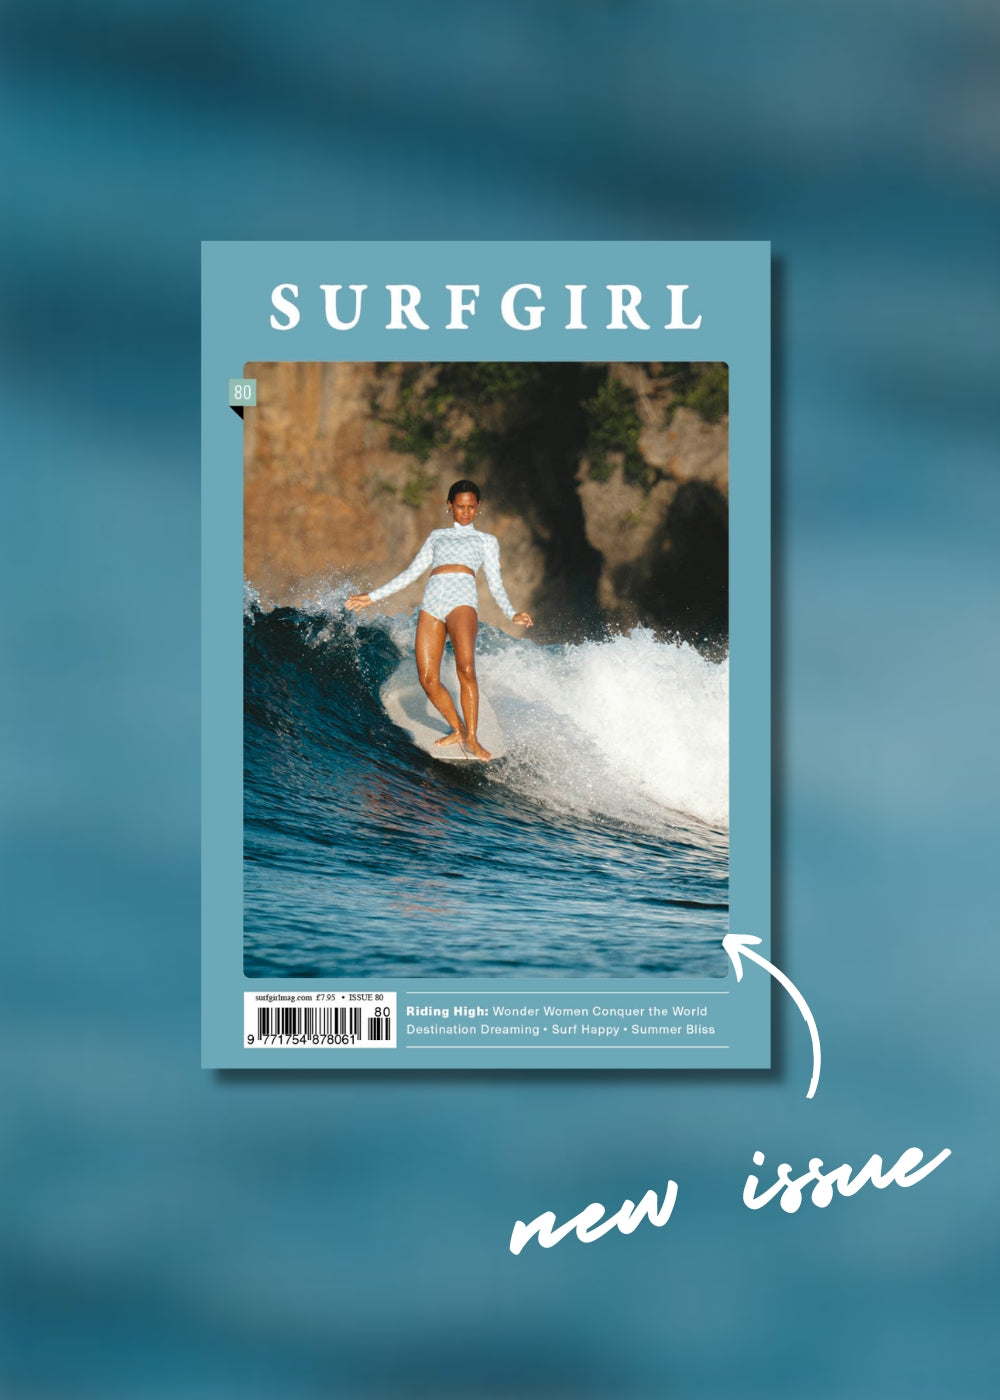 SurfGirl Magazine Issue 80